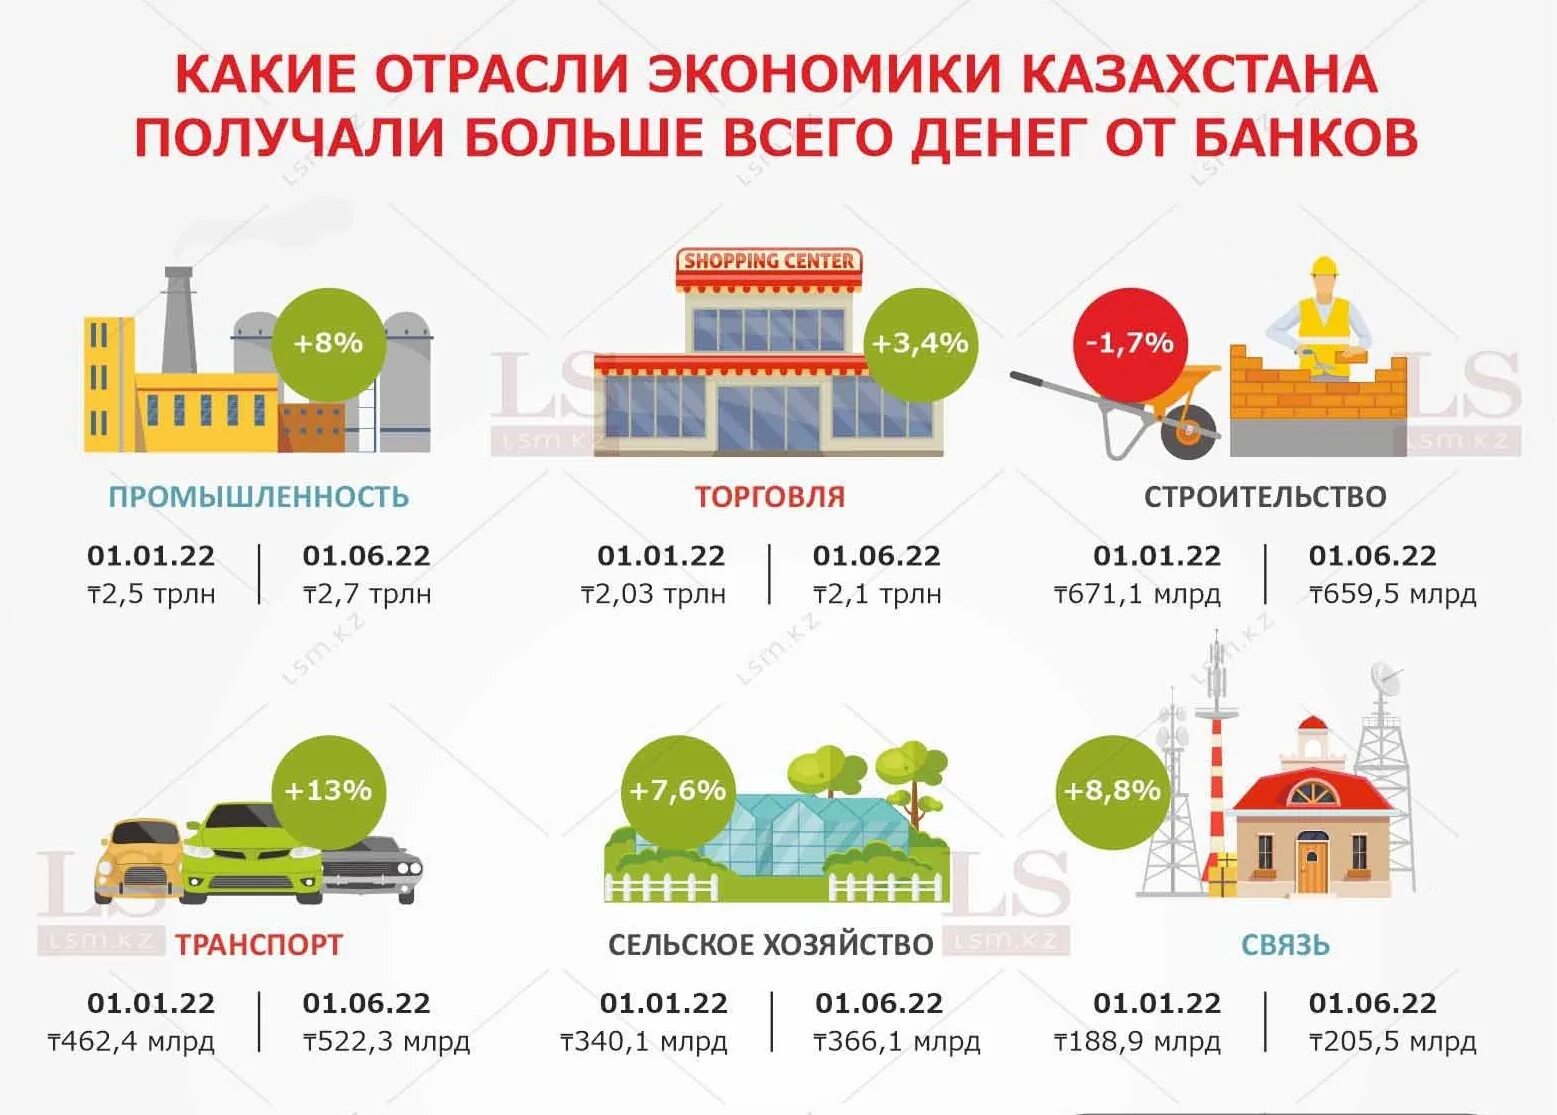 Банки казахстана дают кредиты. Банковские ссуды инфографика. Отрасли инфографика. Сектора бизнеса инфографика. Инфографика город данные.